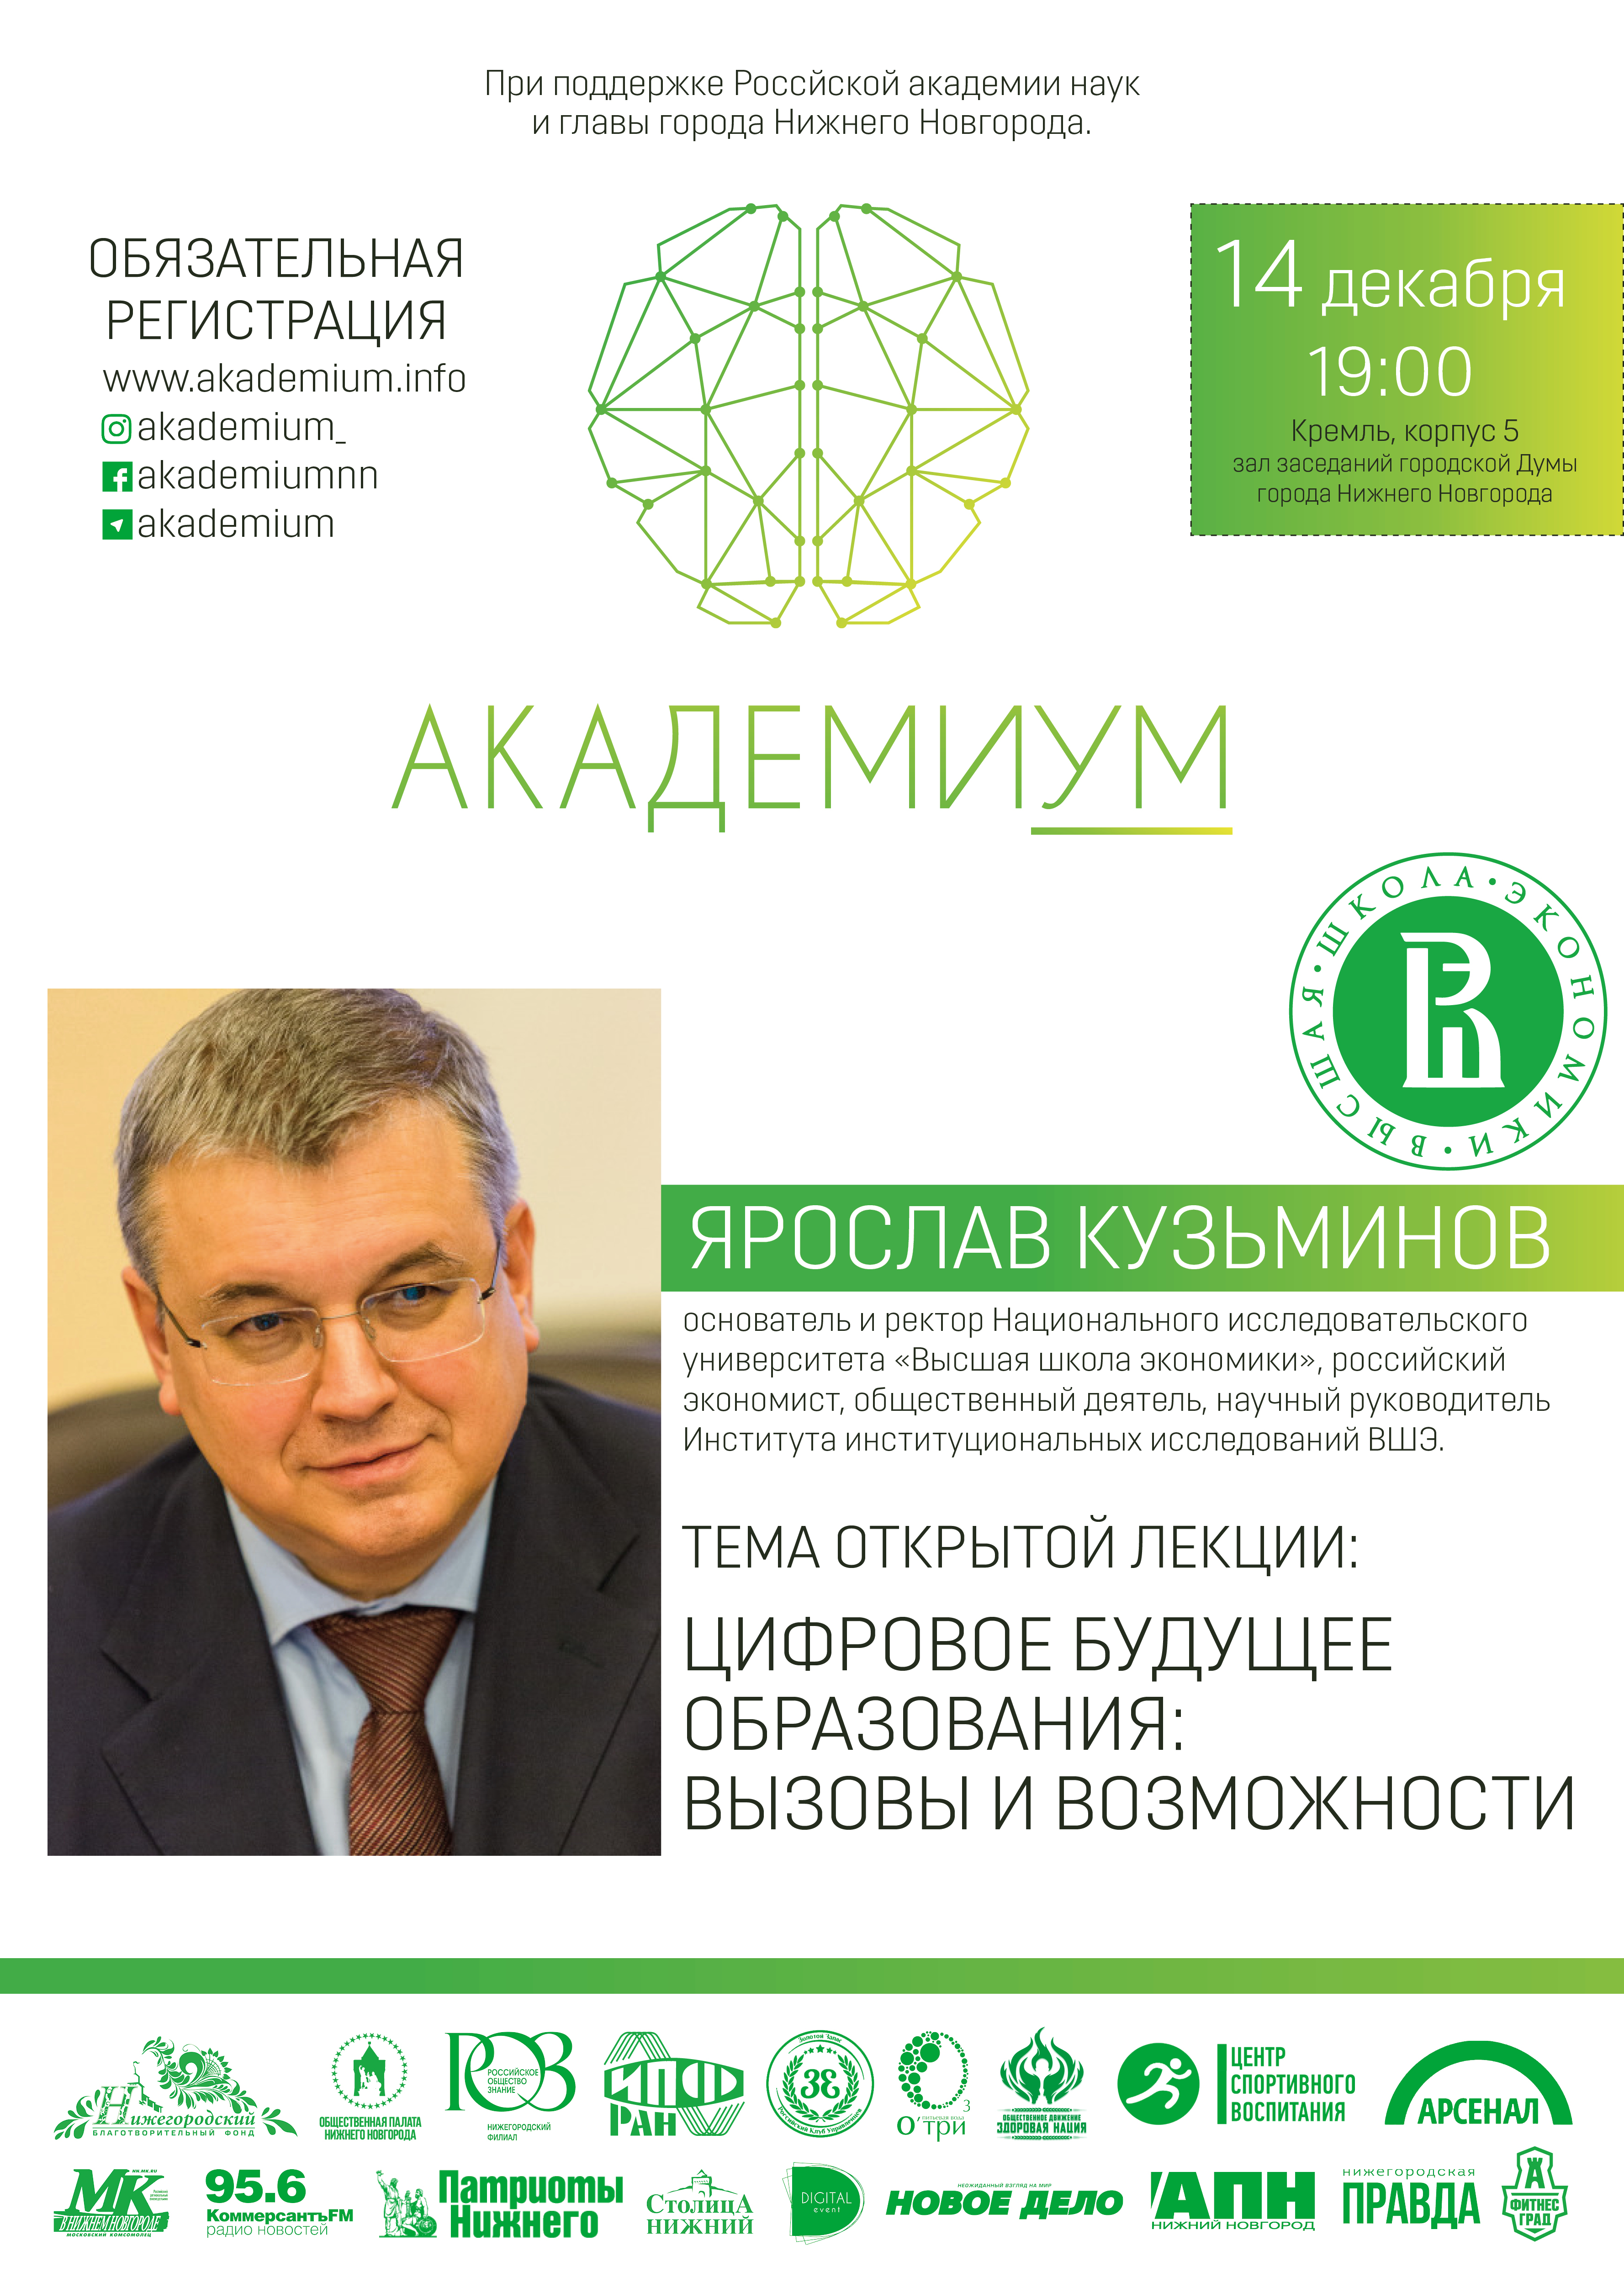 Ректор НИУ ВШЭ Ярослав Кузьминов проведет открытую лекцию в Нижнем Новгороде - фото 1